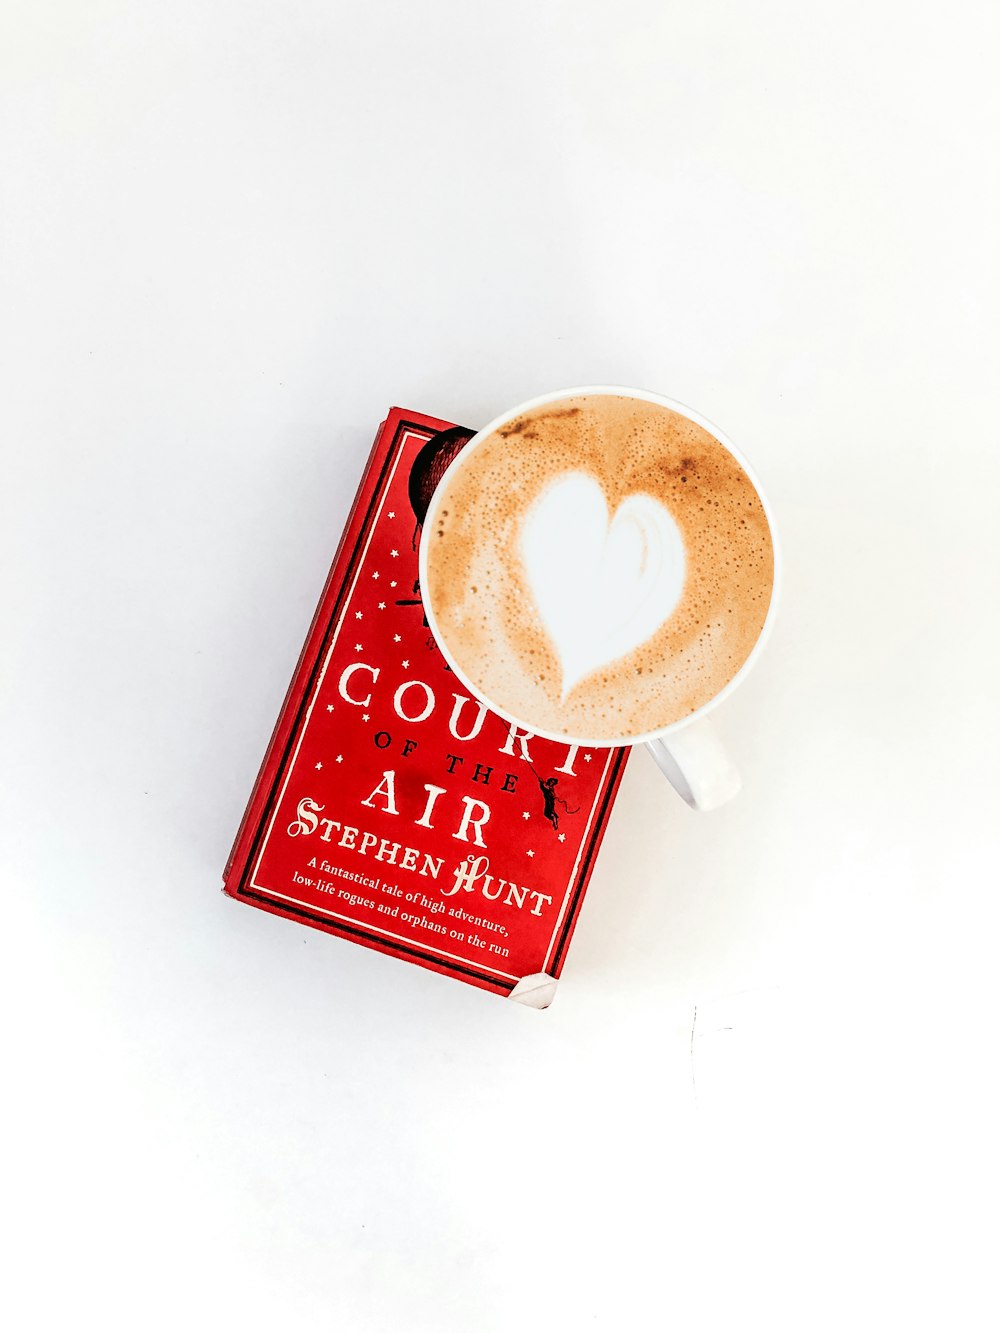 Tasse ronde en céramique blanche sur le dessus du livre Court Air rouge de Stephen Hunt